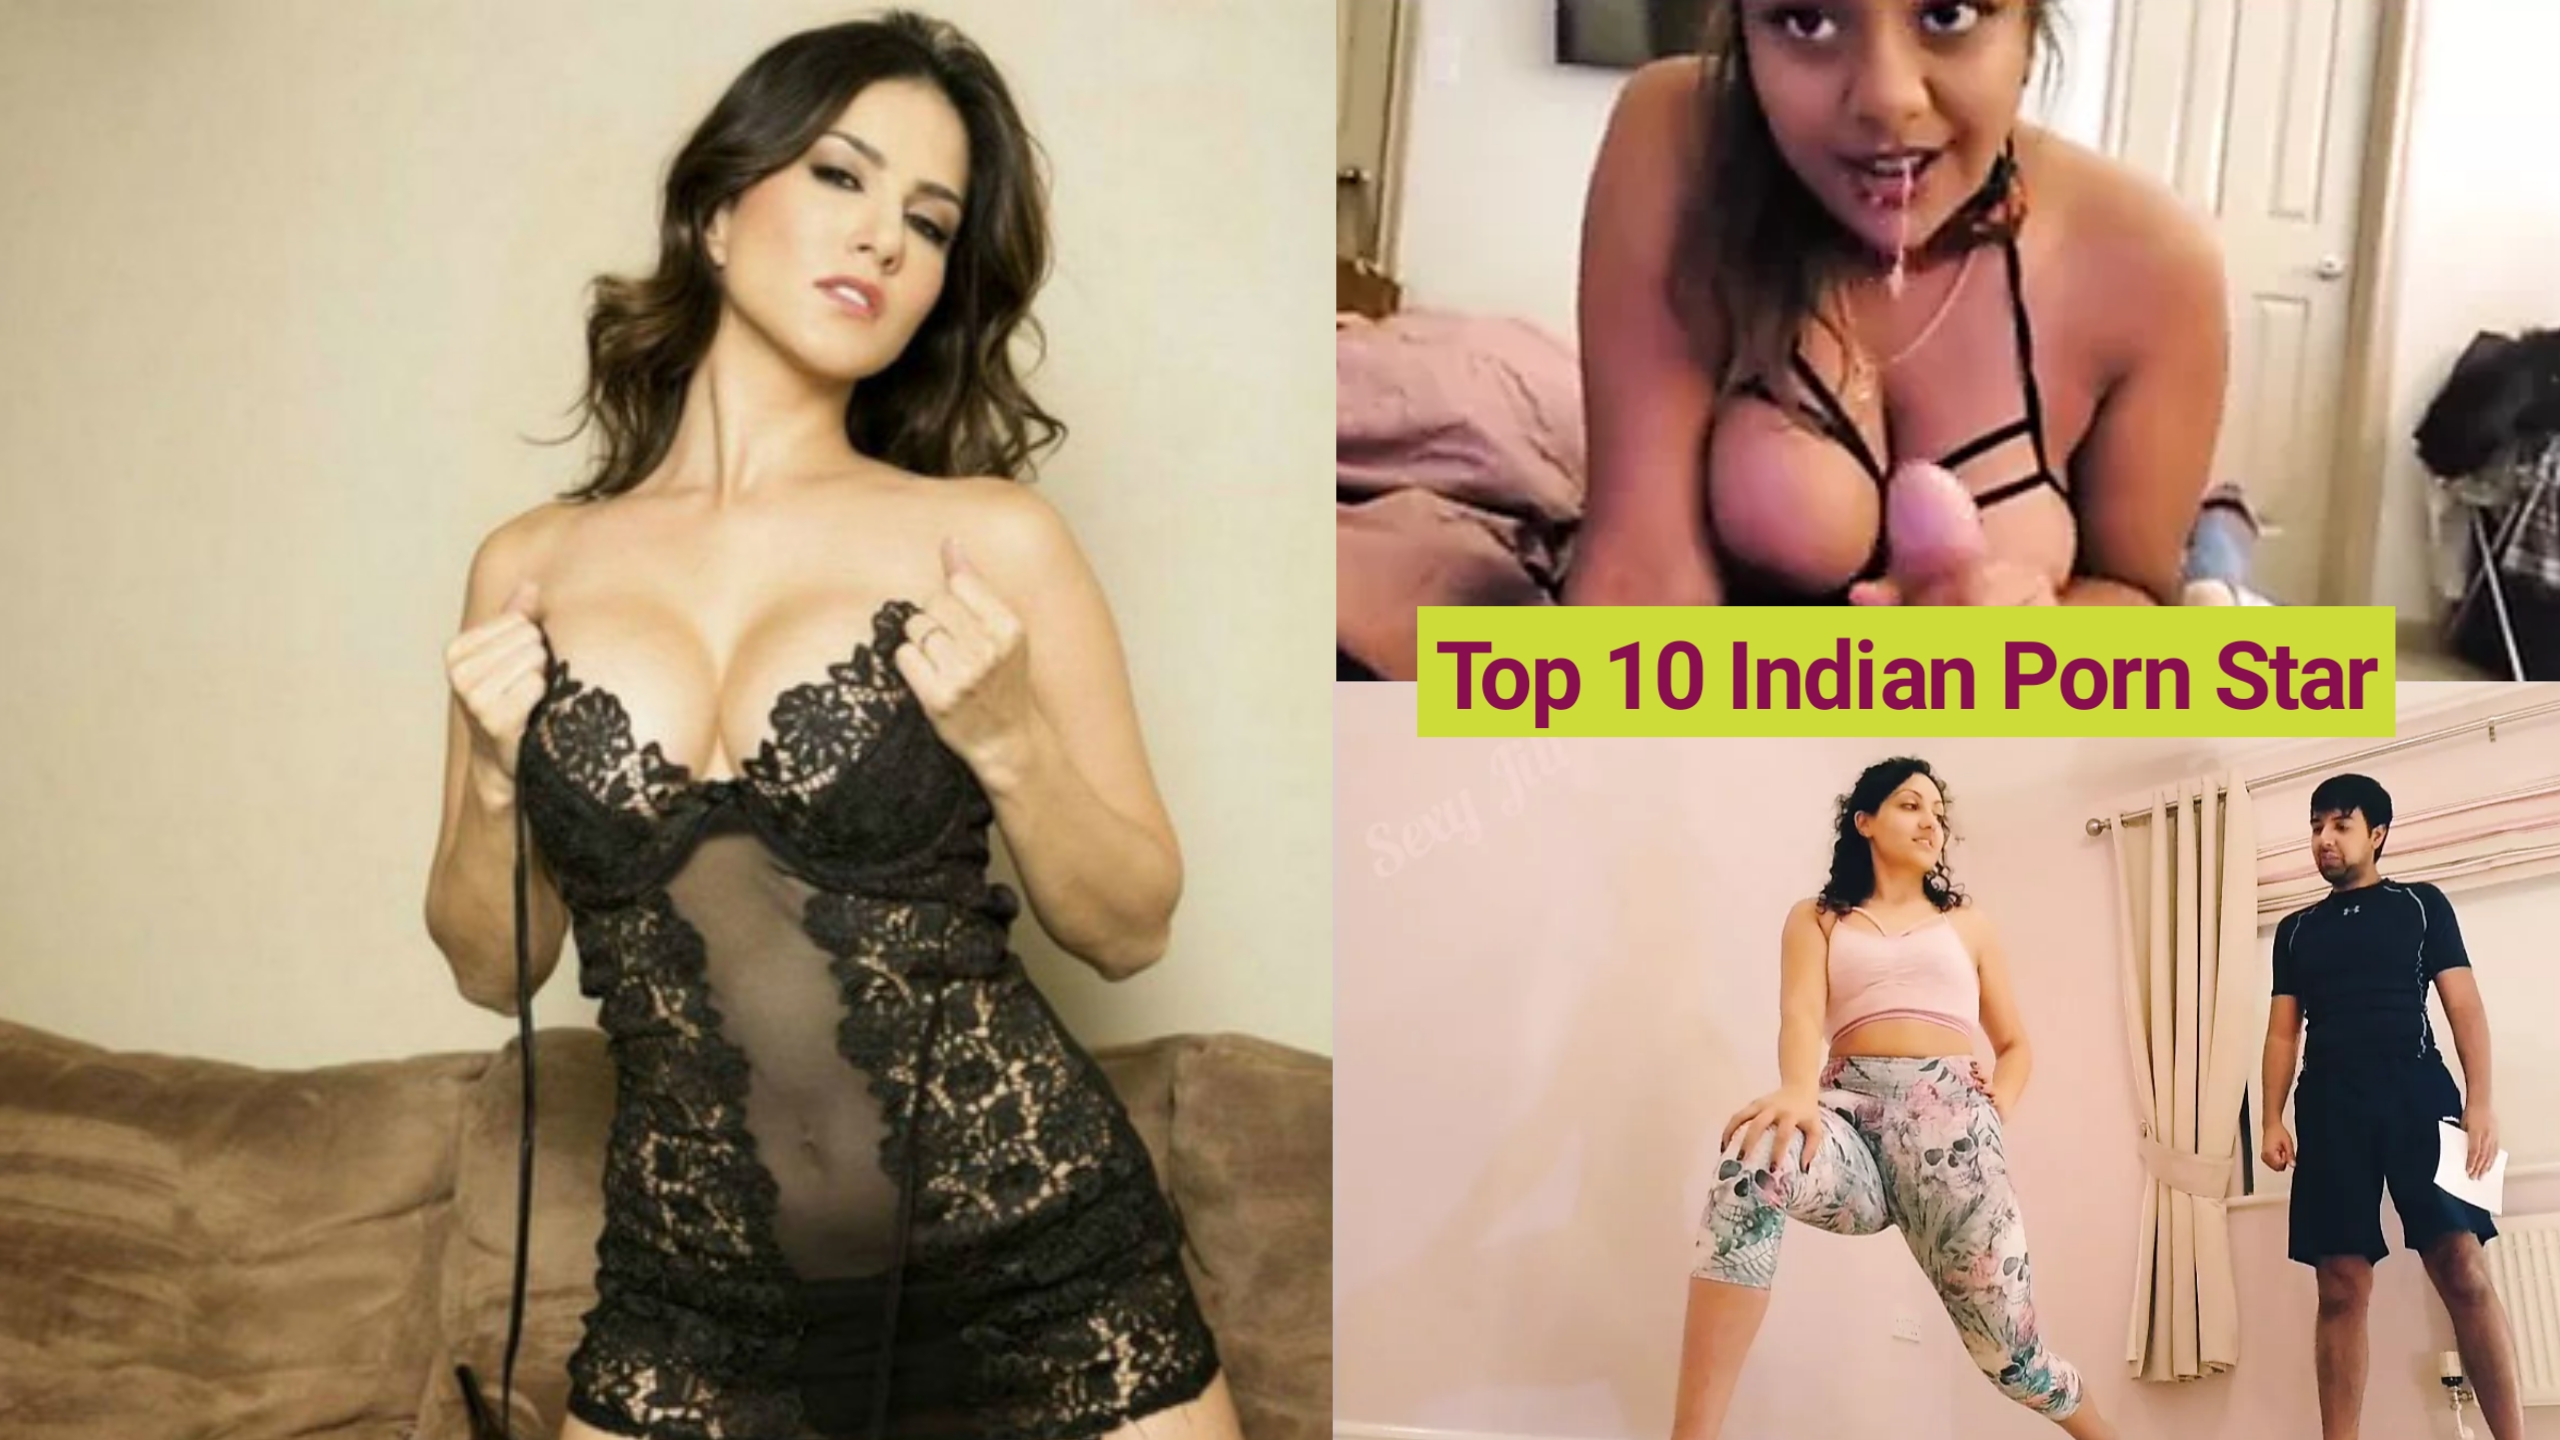 Top 10 Indian Porn - Top 10 Indian Porn Star | top 10 indian porn star name | top 10 indian porn  star list